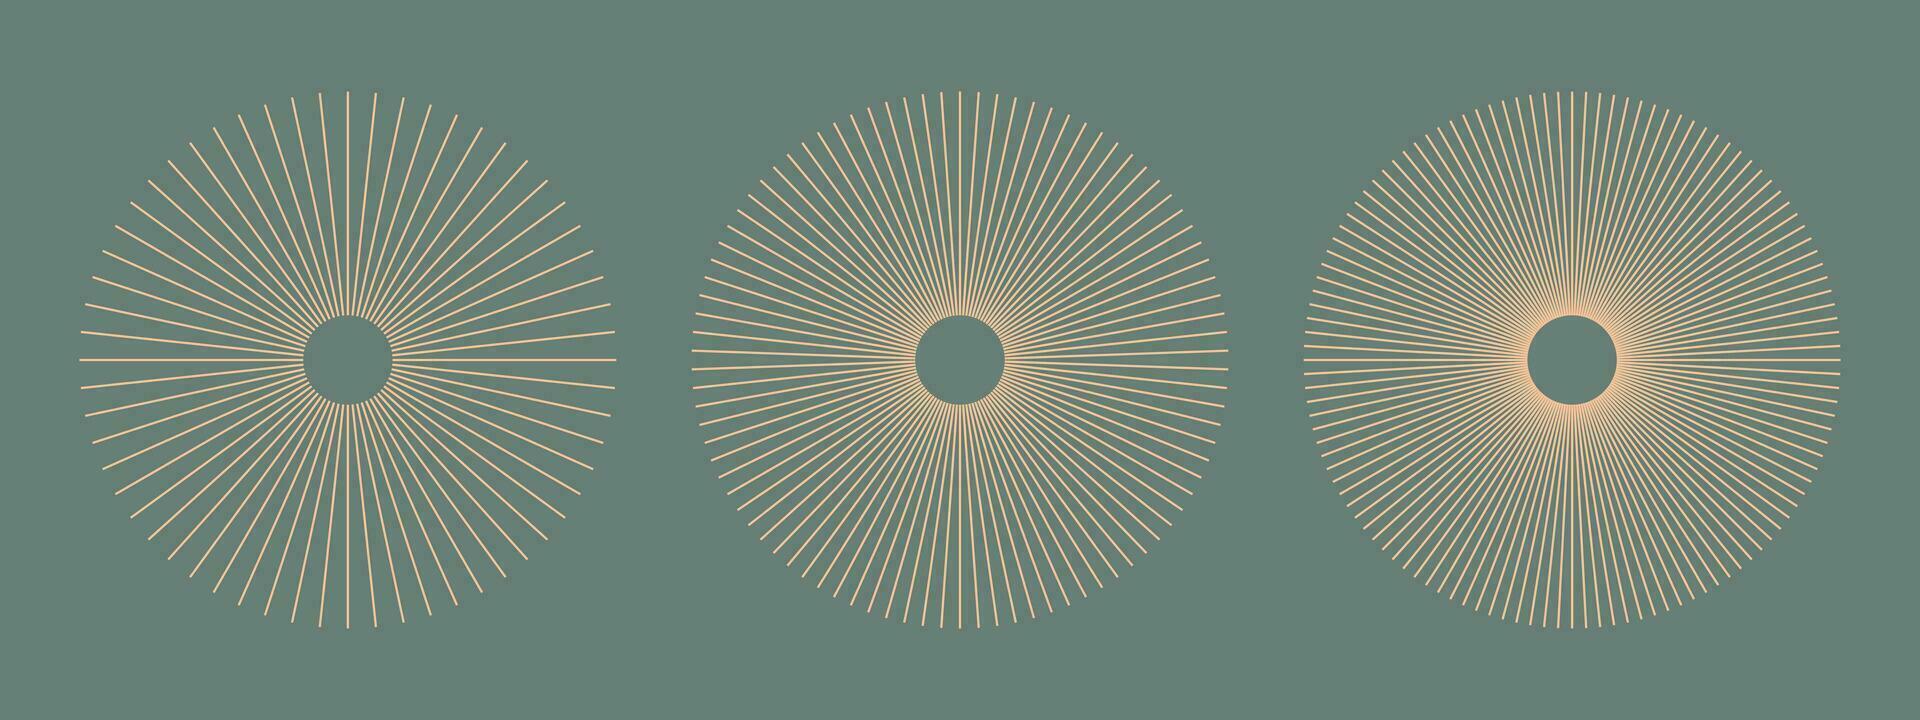 radiell cirkel rader. cirkulär rader element. symbol av Sol stjärna strålar. persika ludd snöflinga. platt design element. abstrakt illusion geometrisk form. ekrar med strålande Ränder. vektor grafisk. eps.